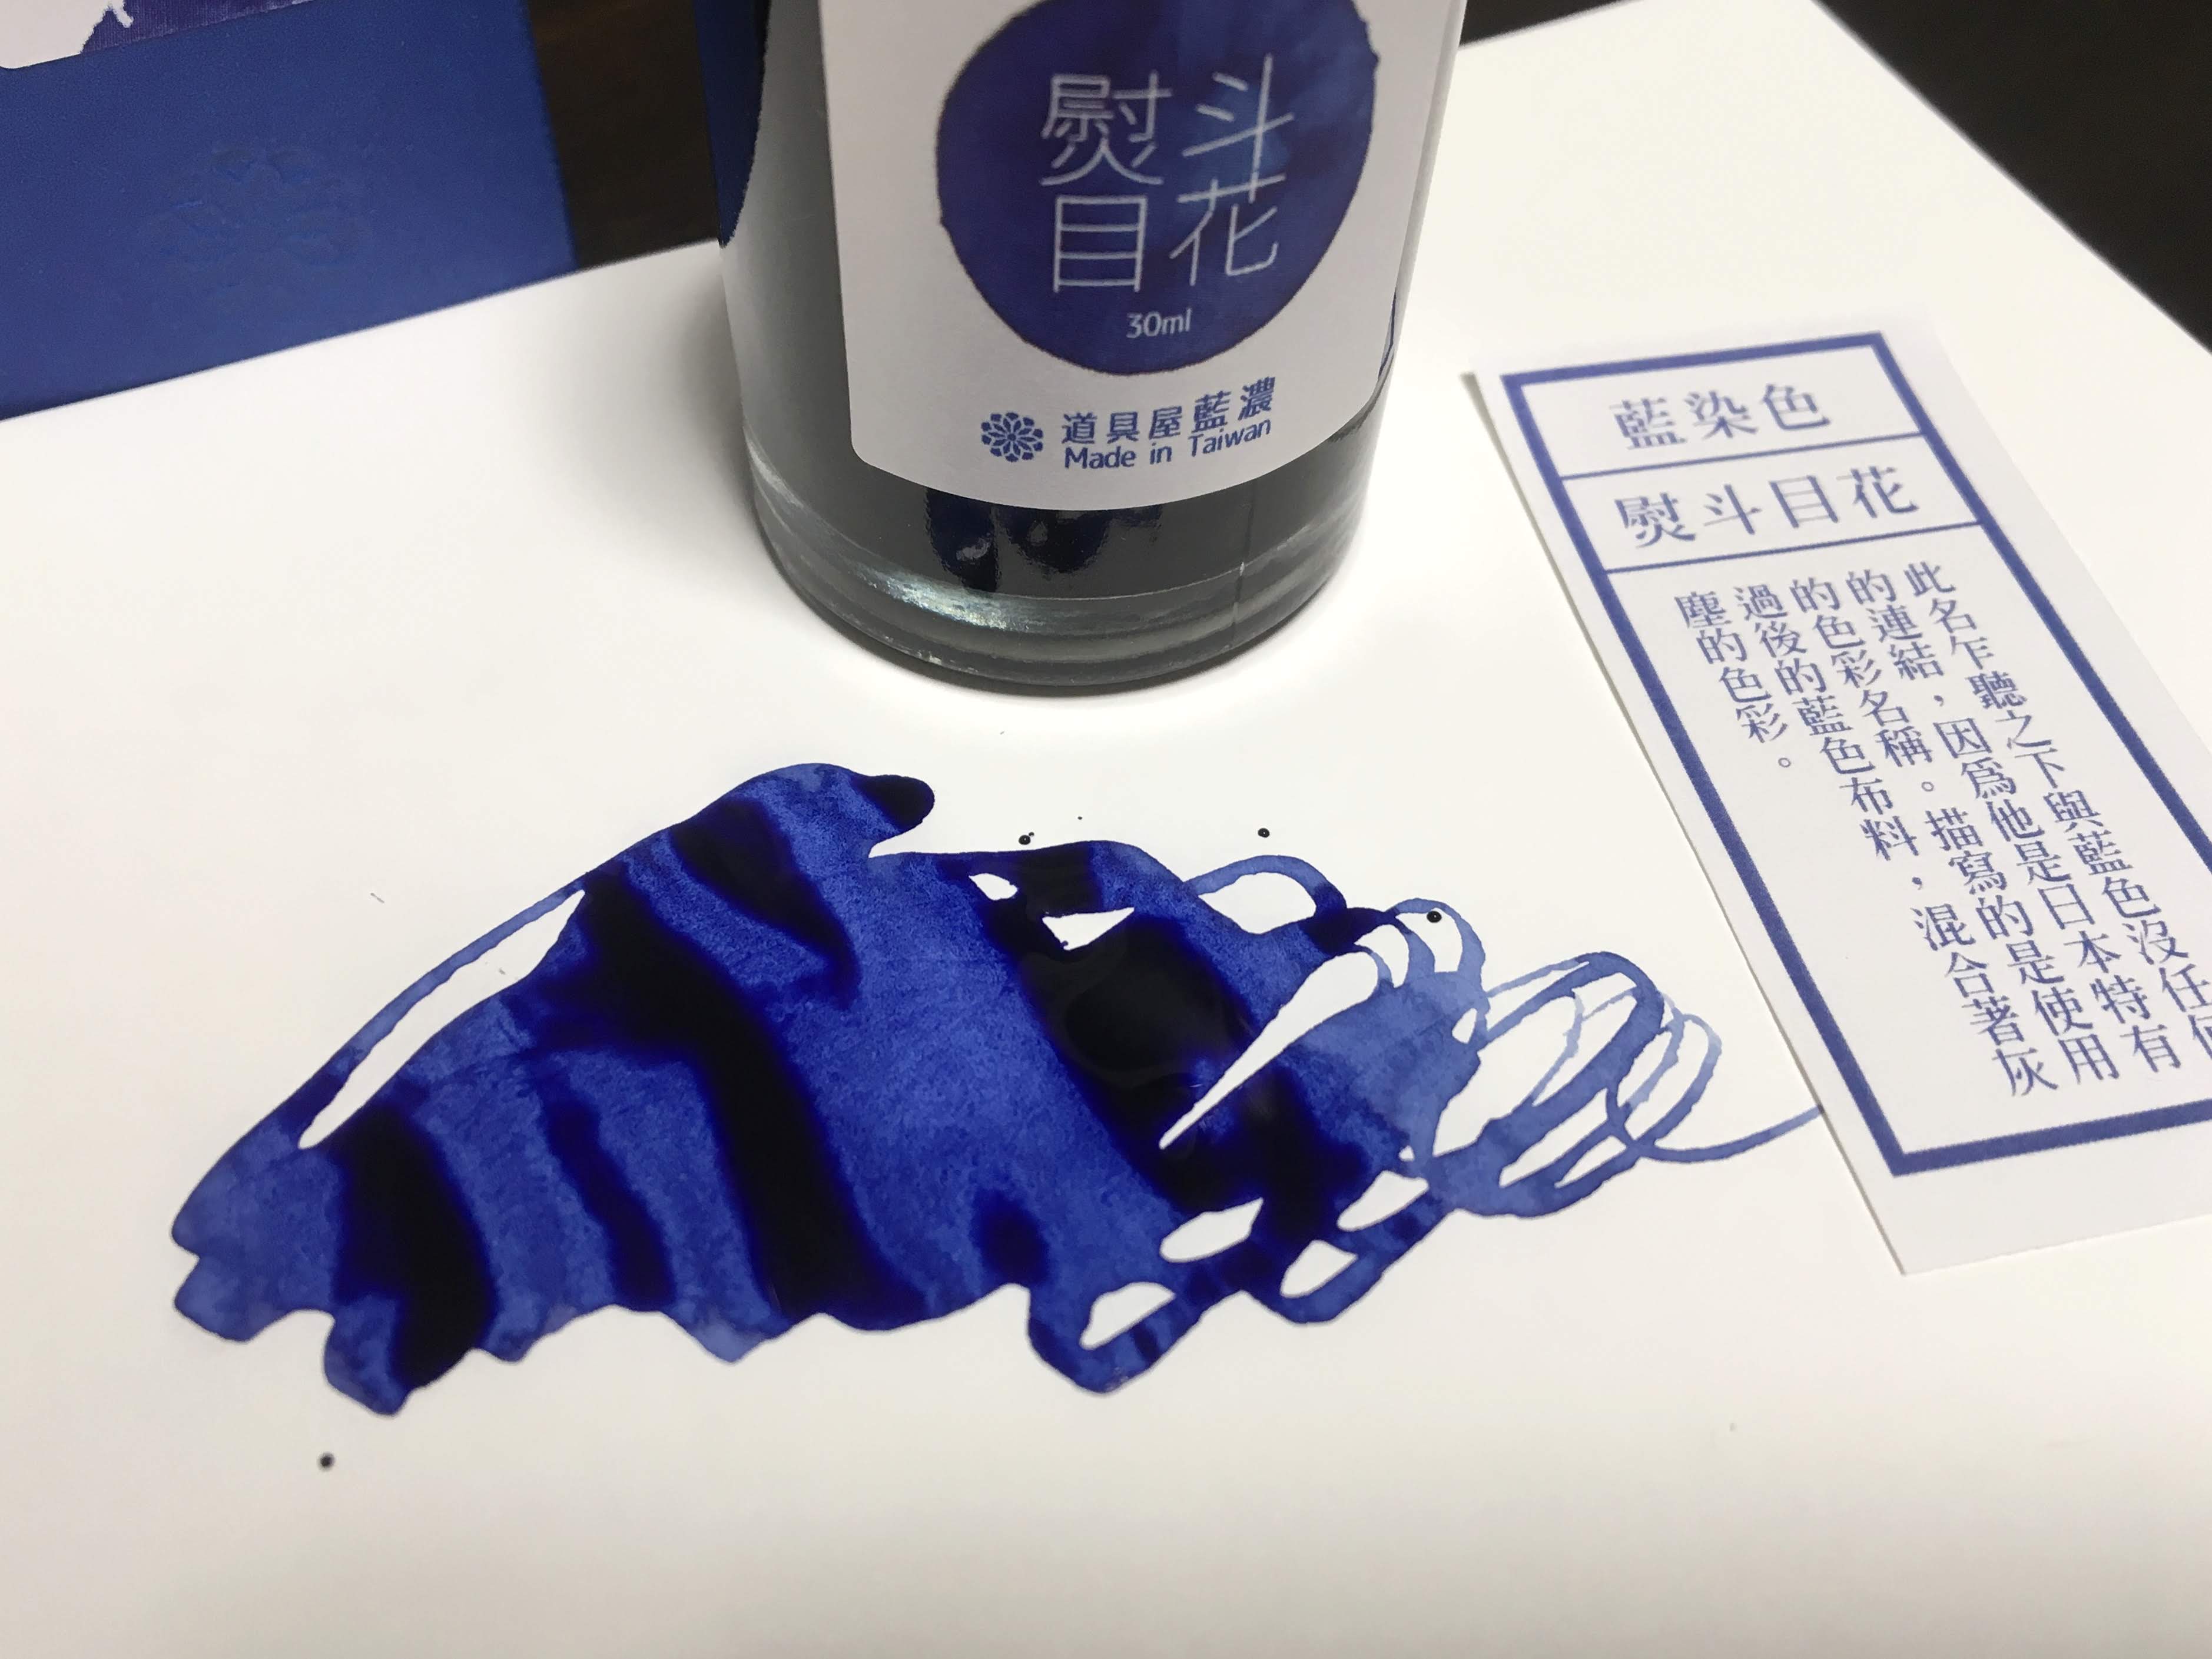 万年筆ink 藍濃道具屋 レンノンツールバー 藍染め風 熨斗目花 万年筆インク